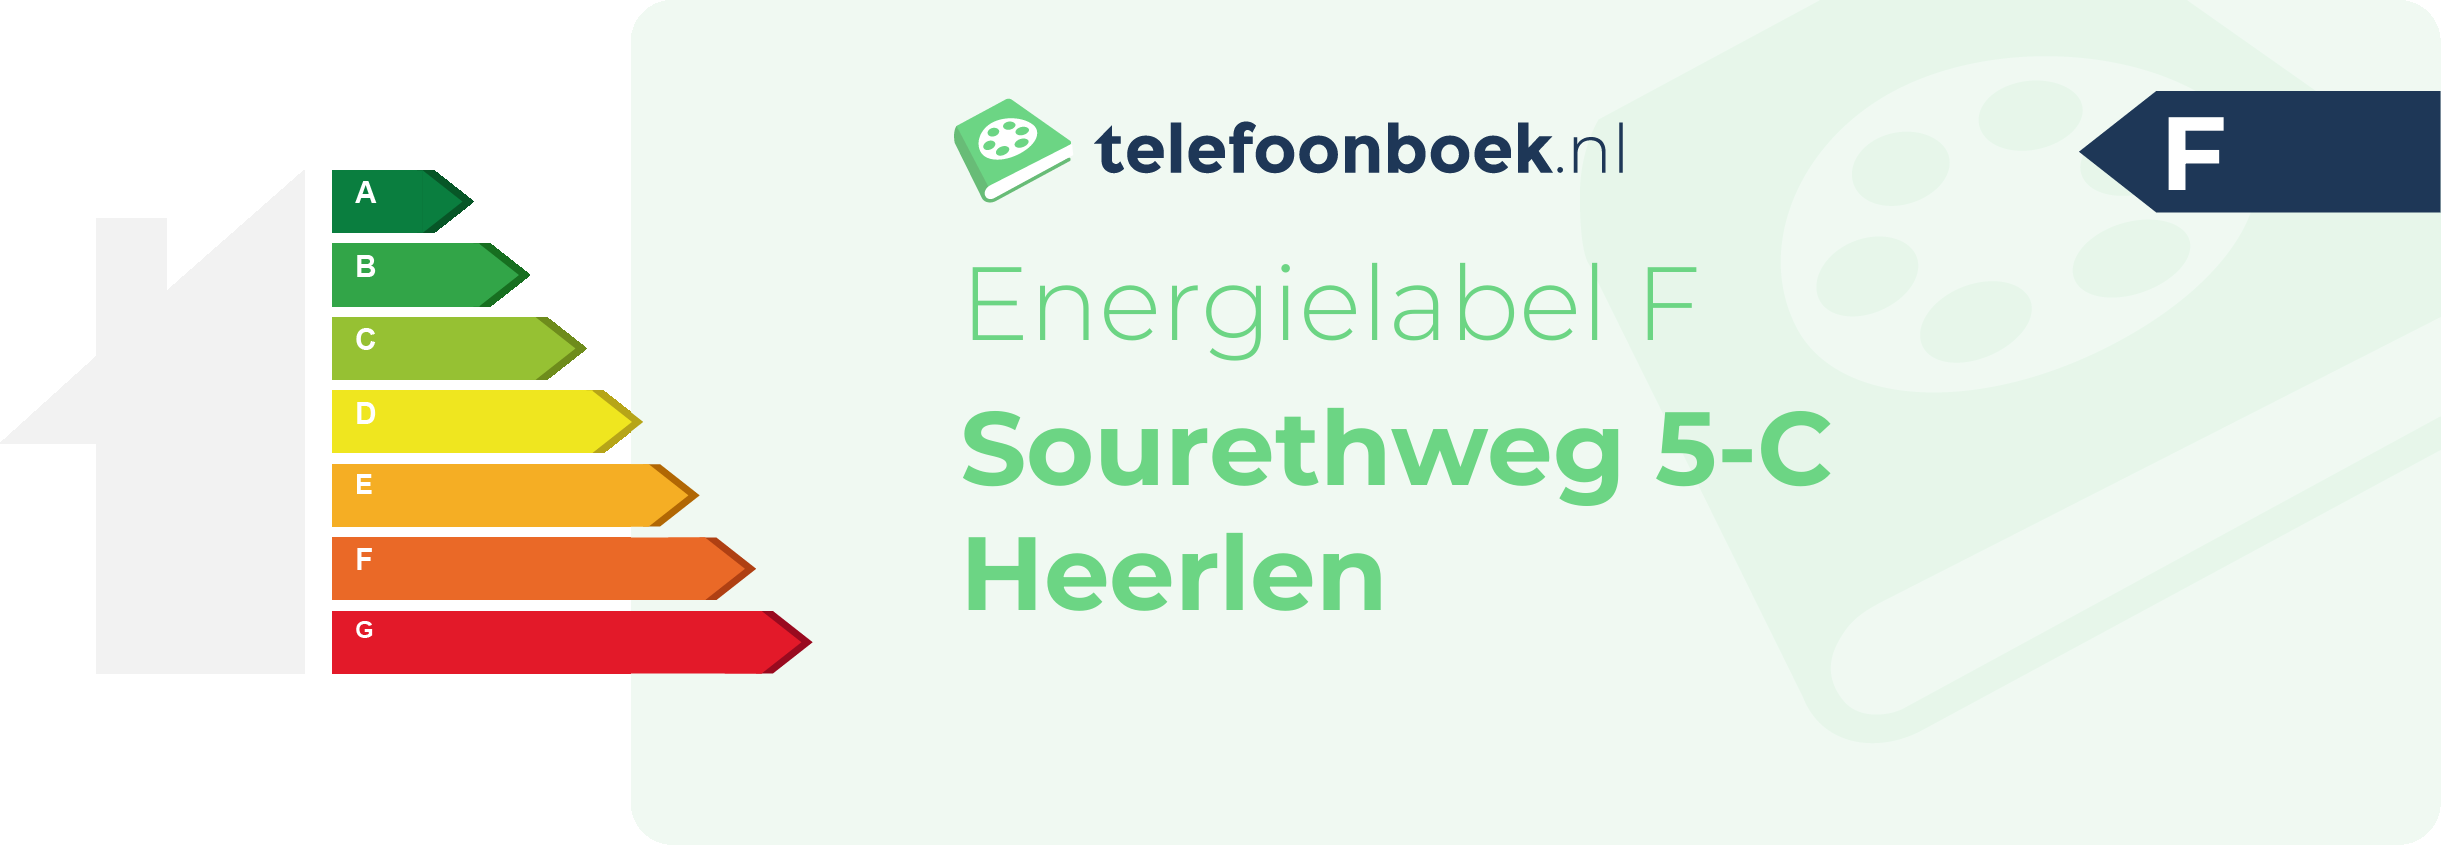 Energielabel Sourethweg 5-C Heerlen